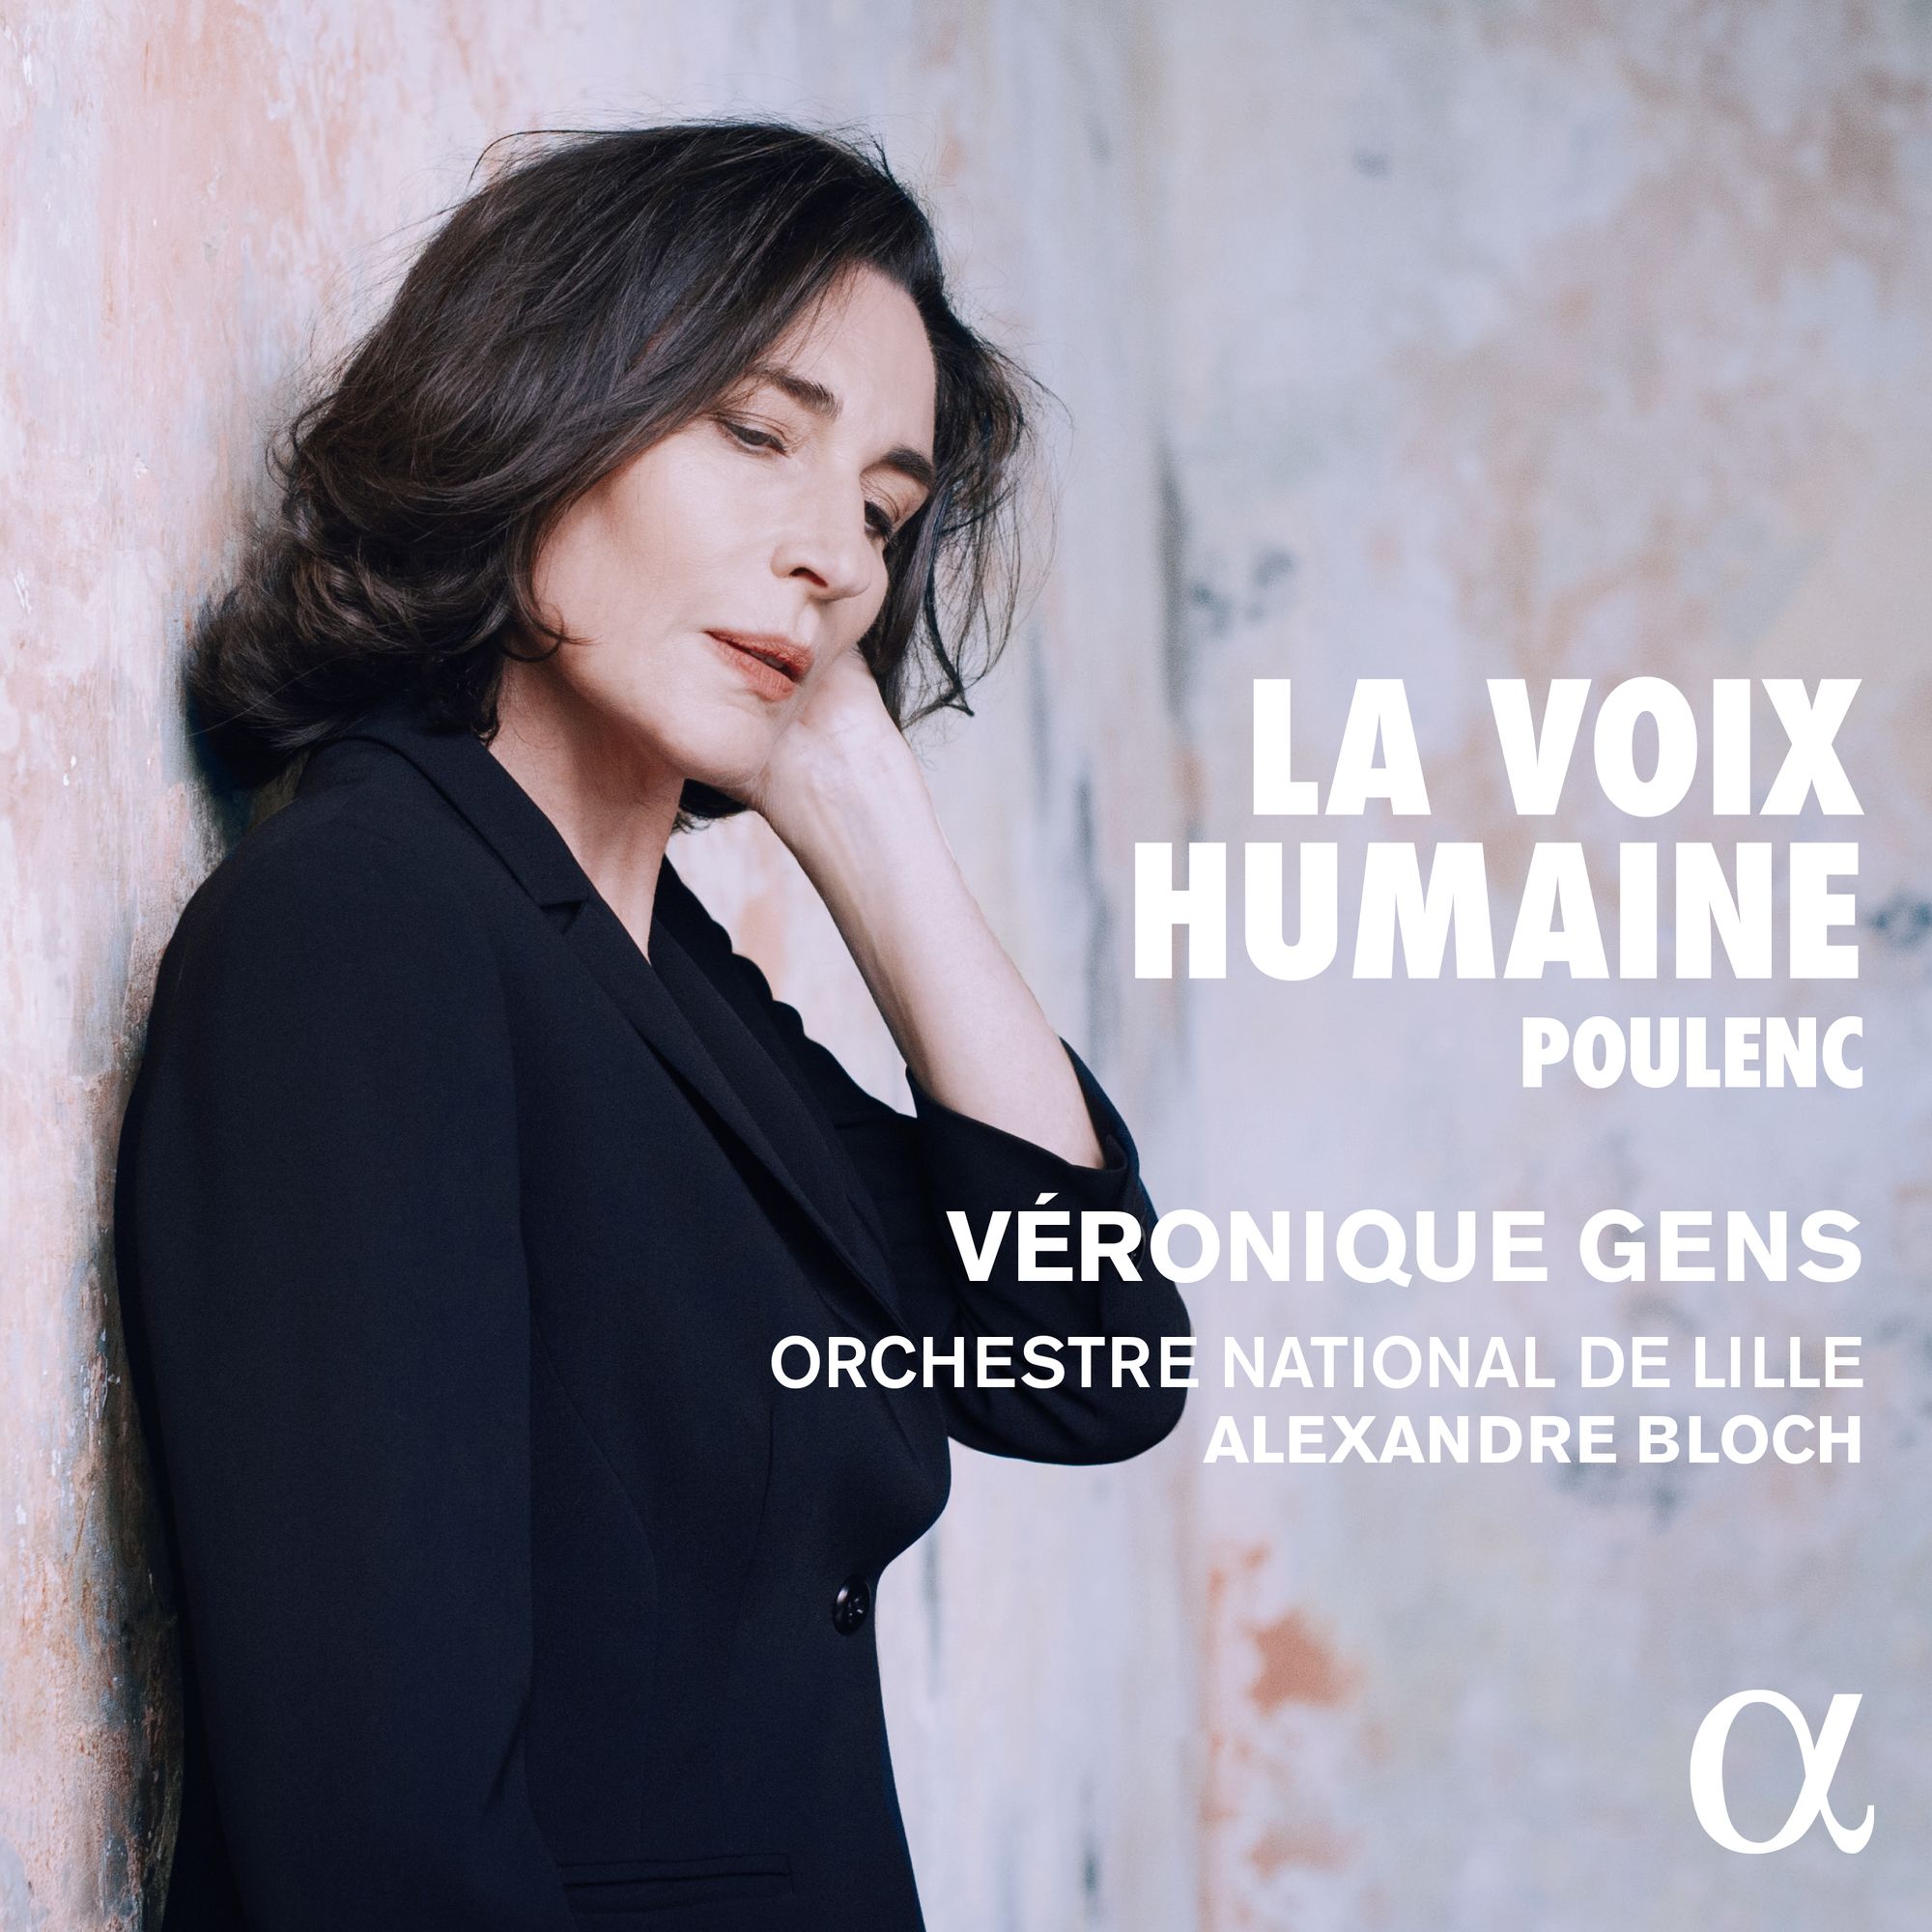 Véronique Gens in Poulenc’s “La Voix Humaine”